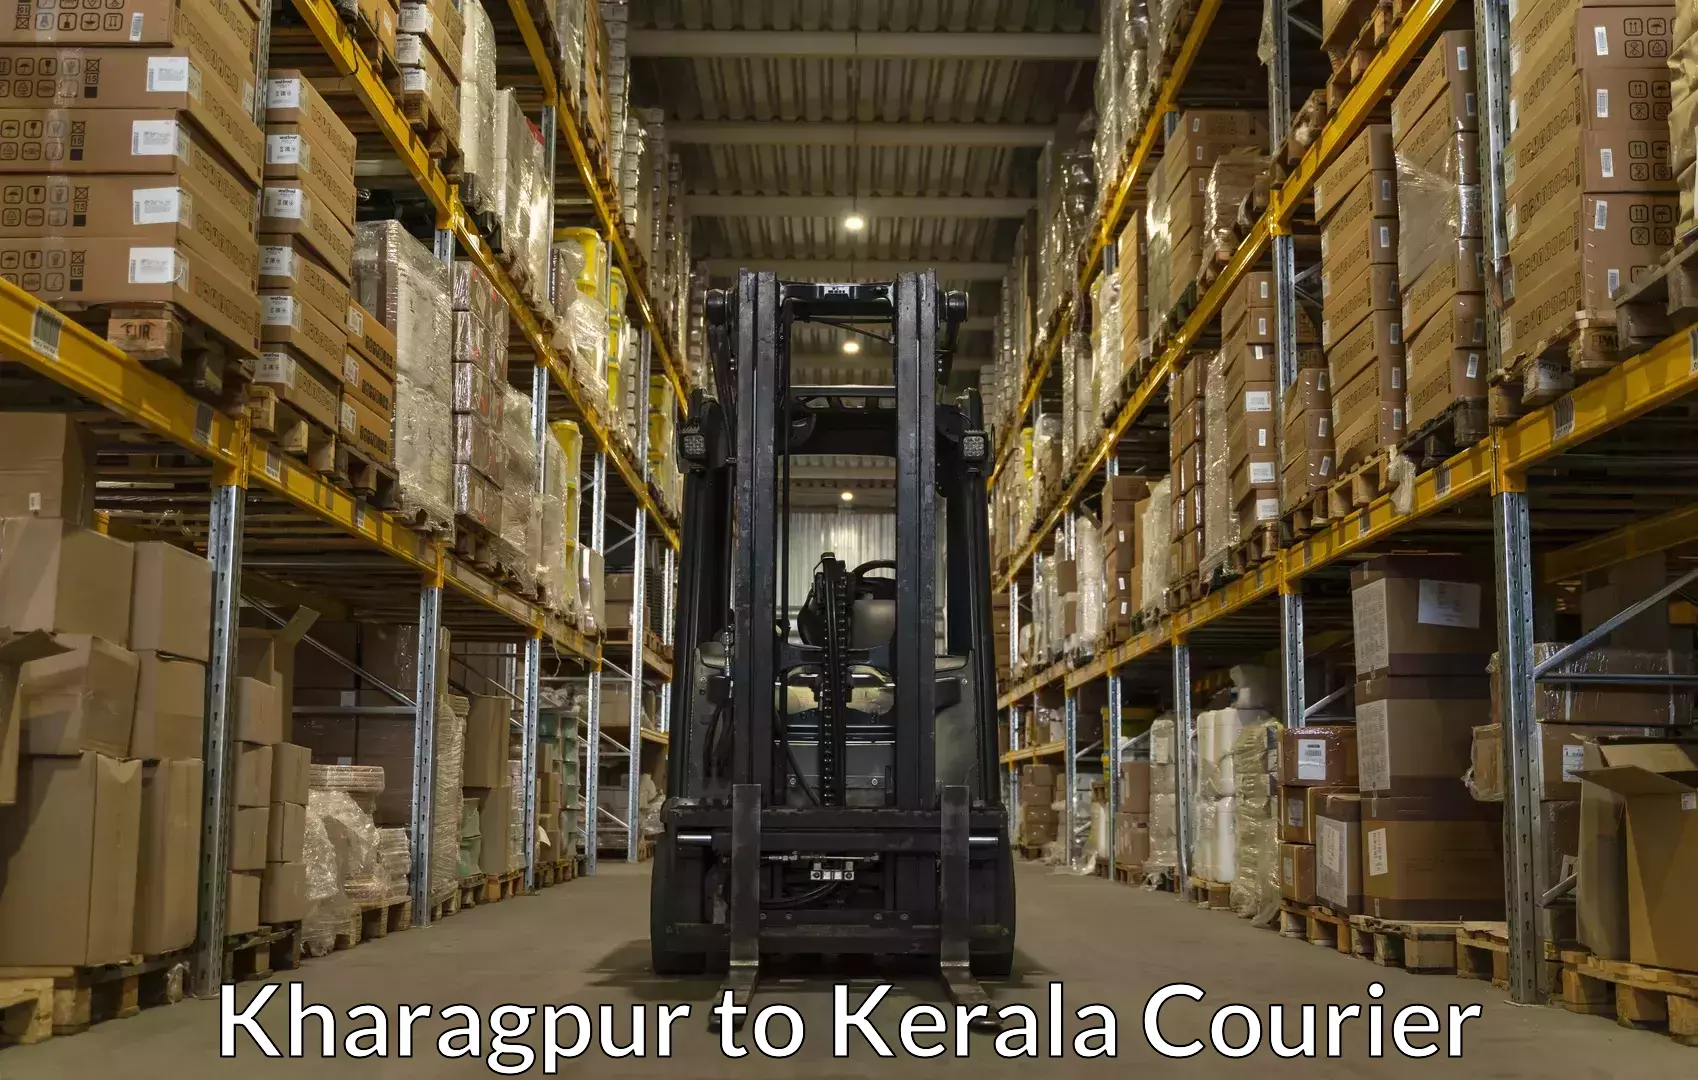 Luggage shipping guide Kharagpur to Kerala